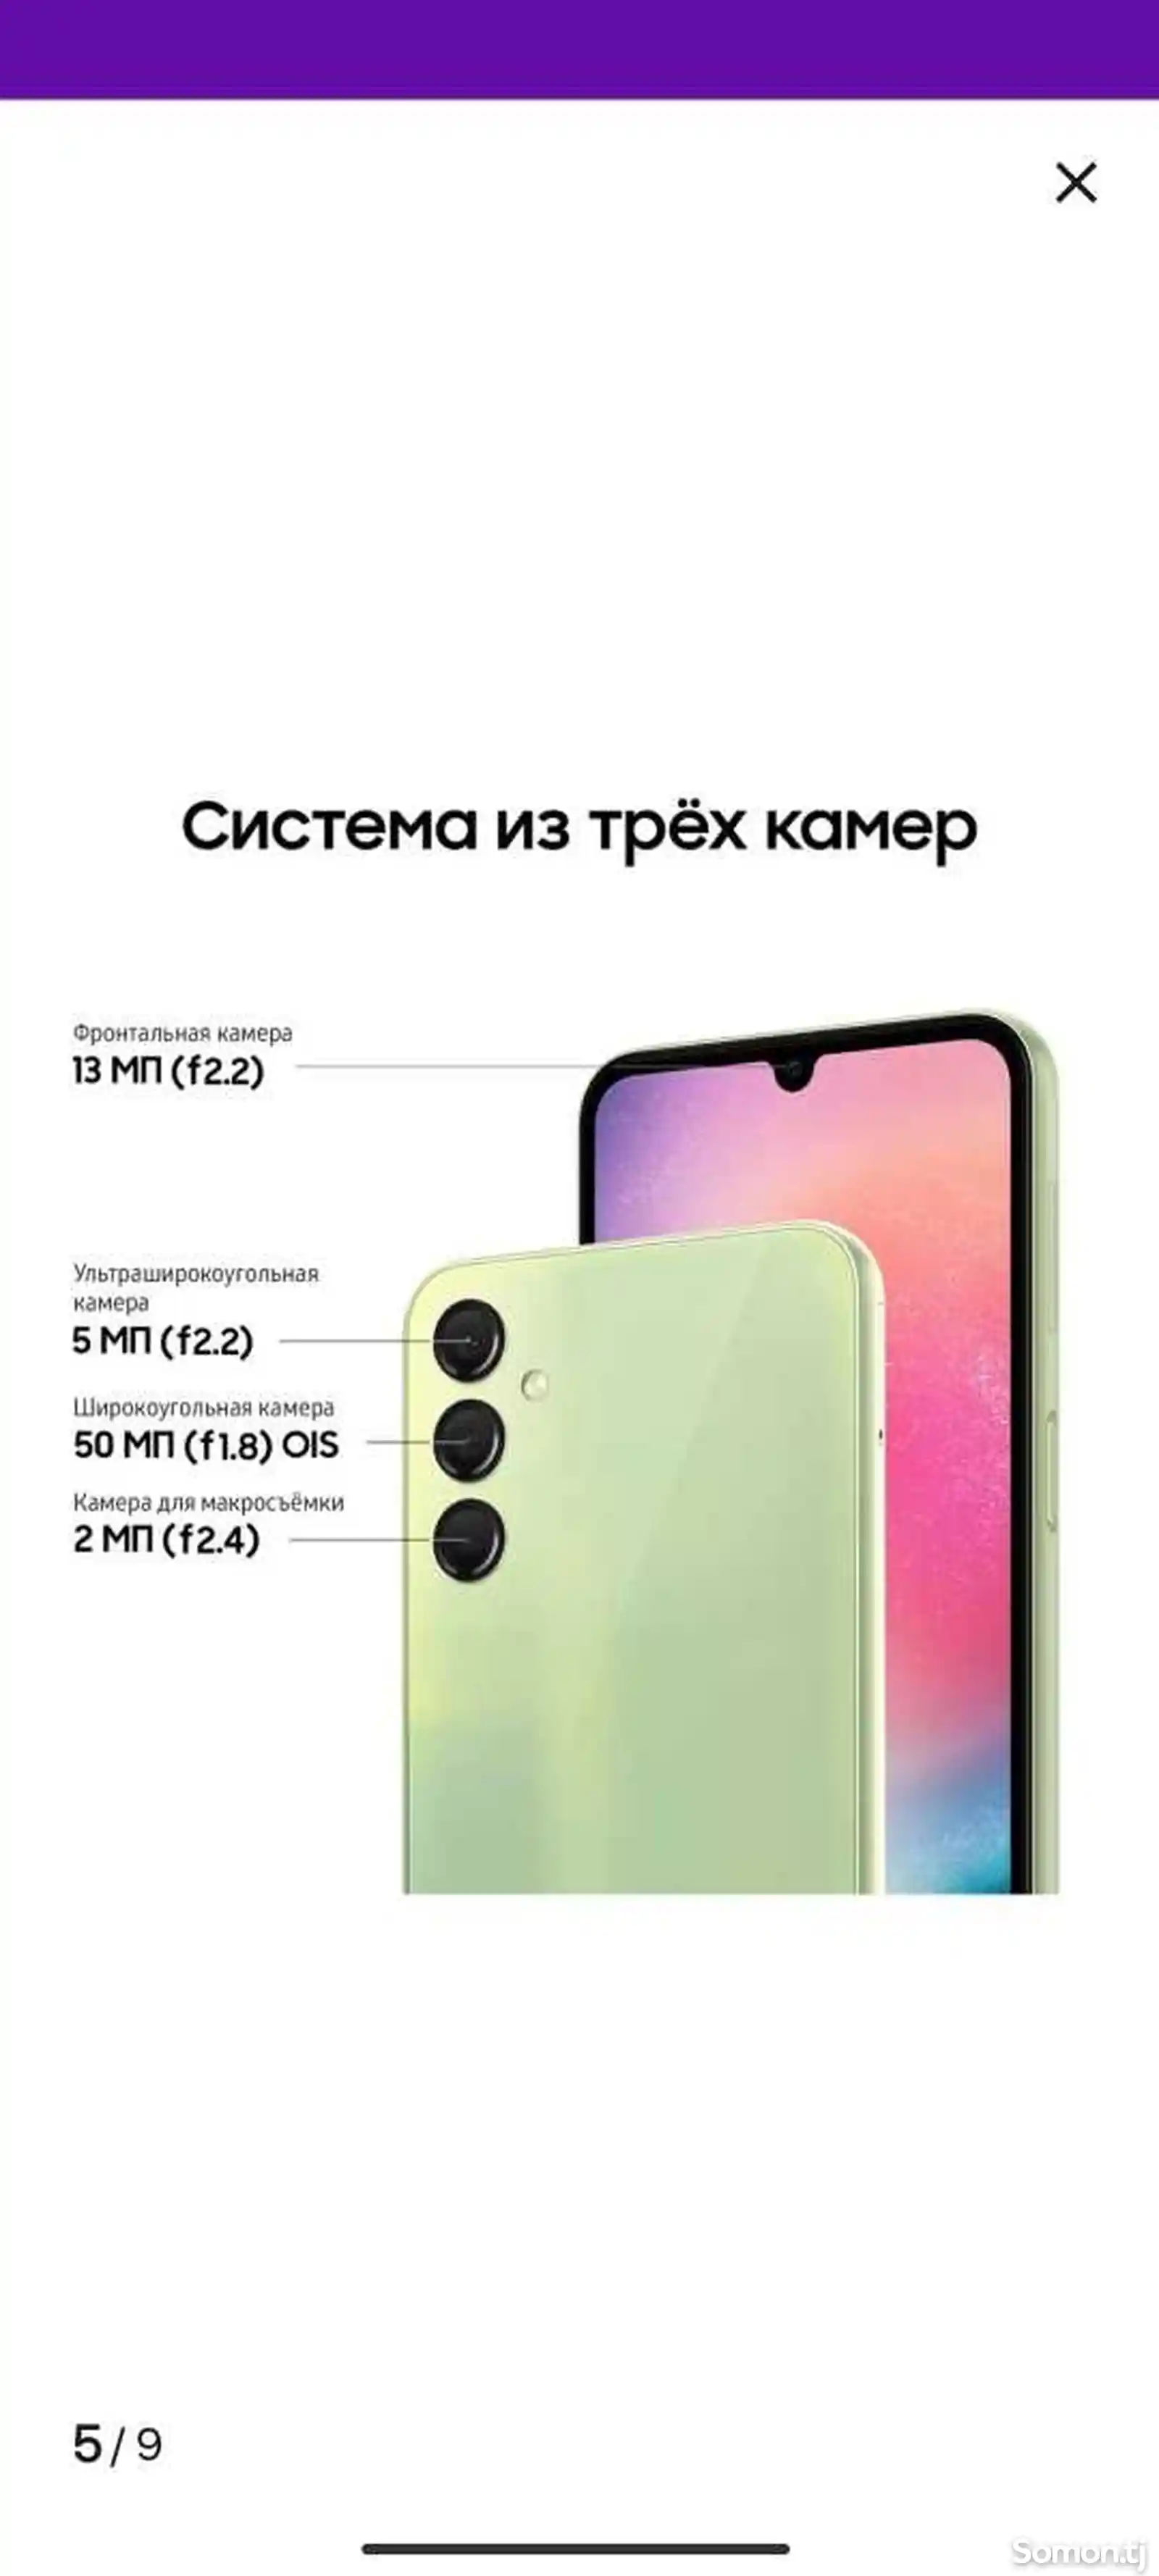 Samsung Galaxy A24-5